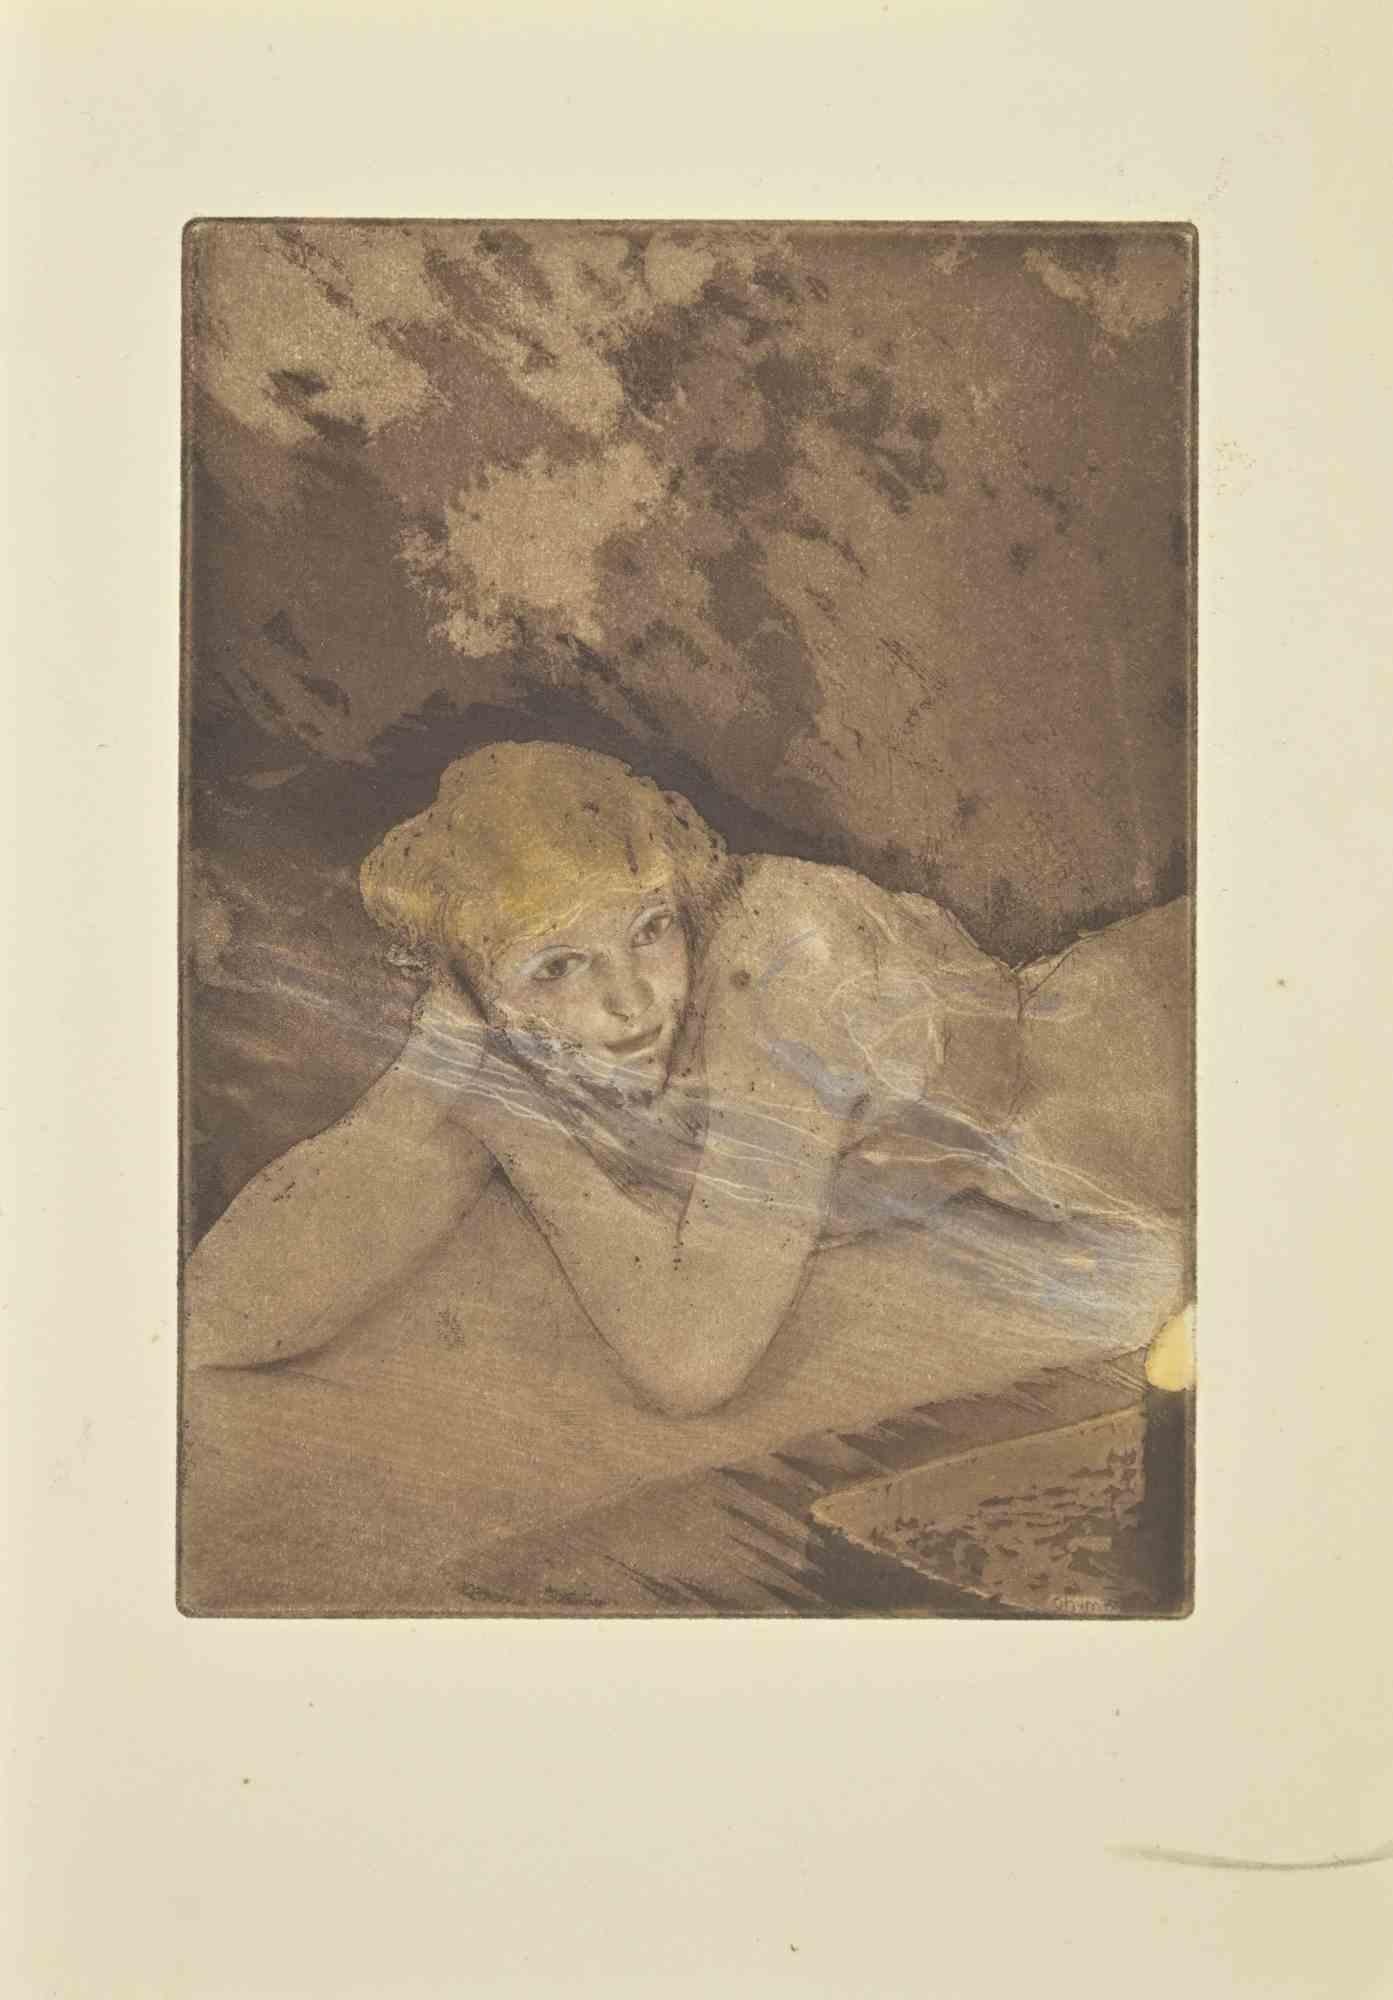 Der Akt auf dem Bett ist eine Radierung von Edouard Chimot aus den 1930er Jahren.

Signiert auf der Platte vom Künstler in der rechten unteren Ecke.

Gute Bedingungen.

Édouard Chimot (26. November 1880 - 7. Juni 1959) war ein französischer